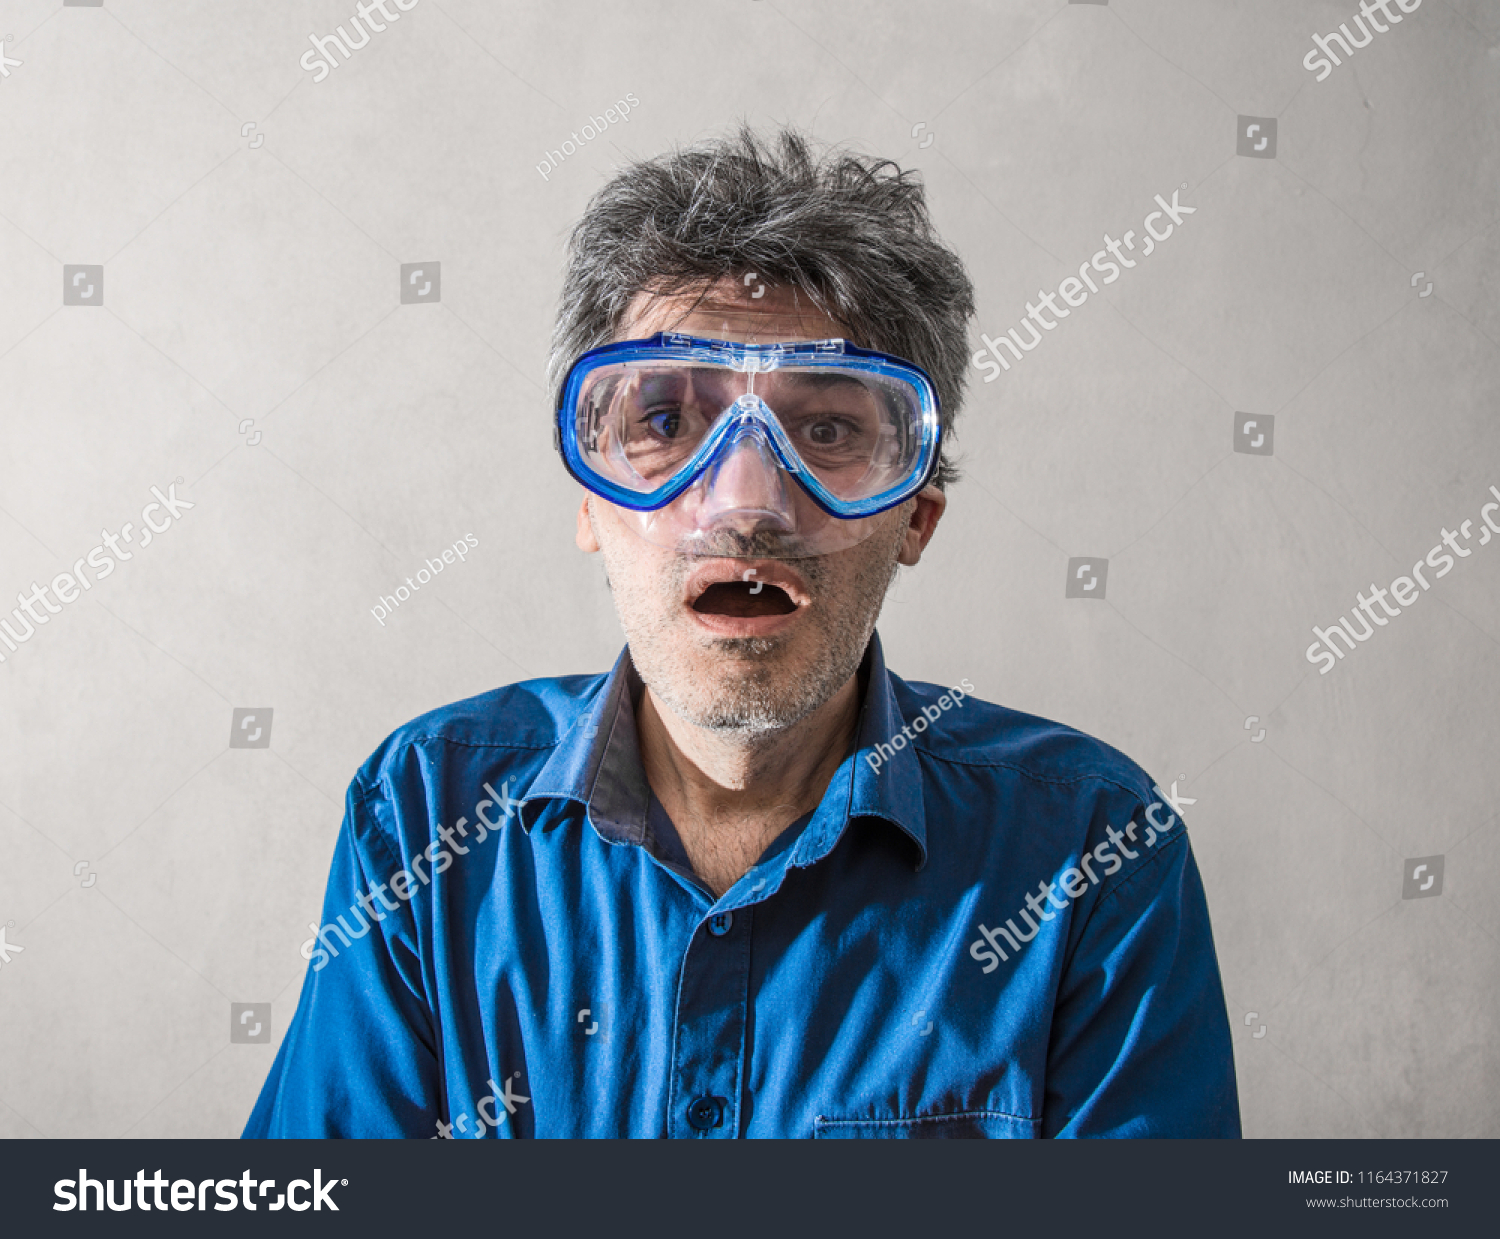 a man having a scuba mask #1164371827